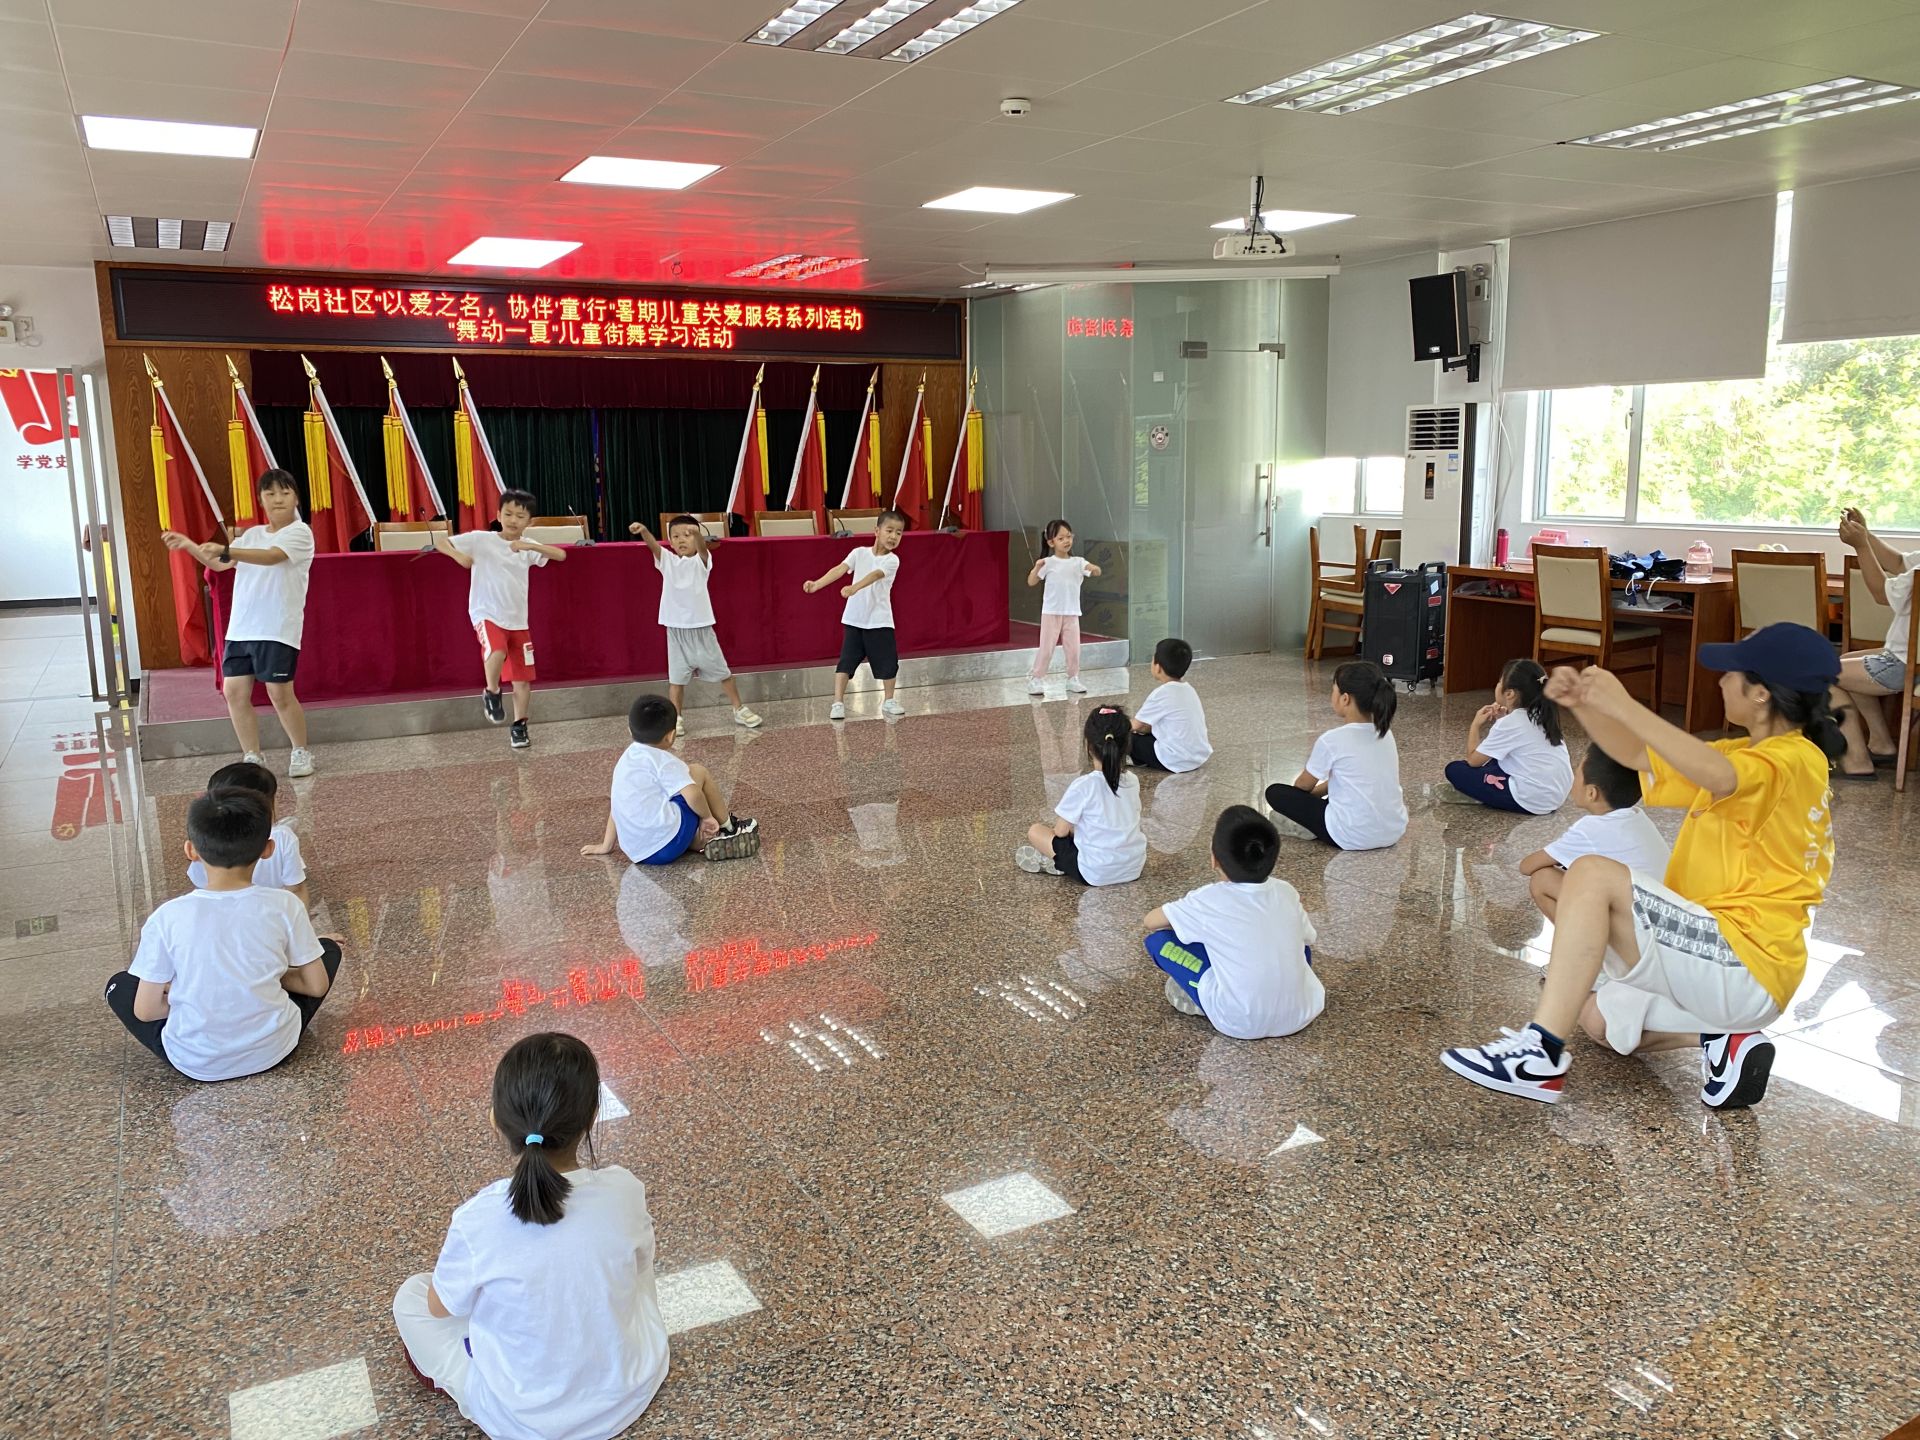 舞动一“夏” 舞出少年风采！松岗社区开展暑期儿童街舞学习活动